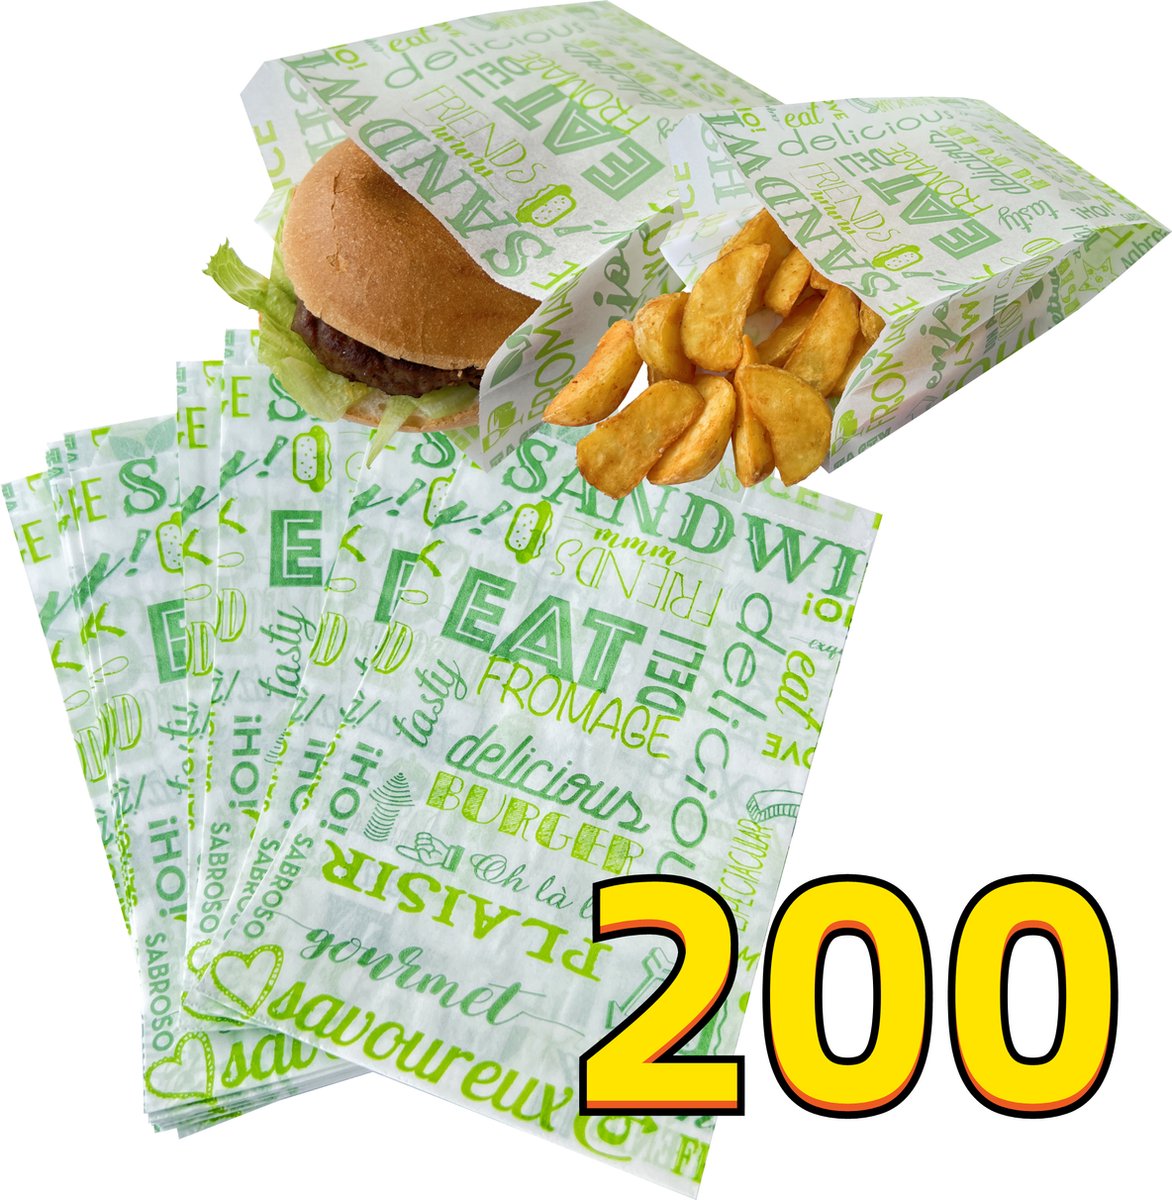 Rainbecom - 200 Stuks - Hamburger Zakje Papier - Vetvrij Papier - Papieren Zak voor Sandwiches - Groen